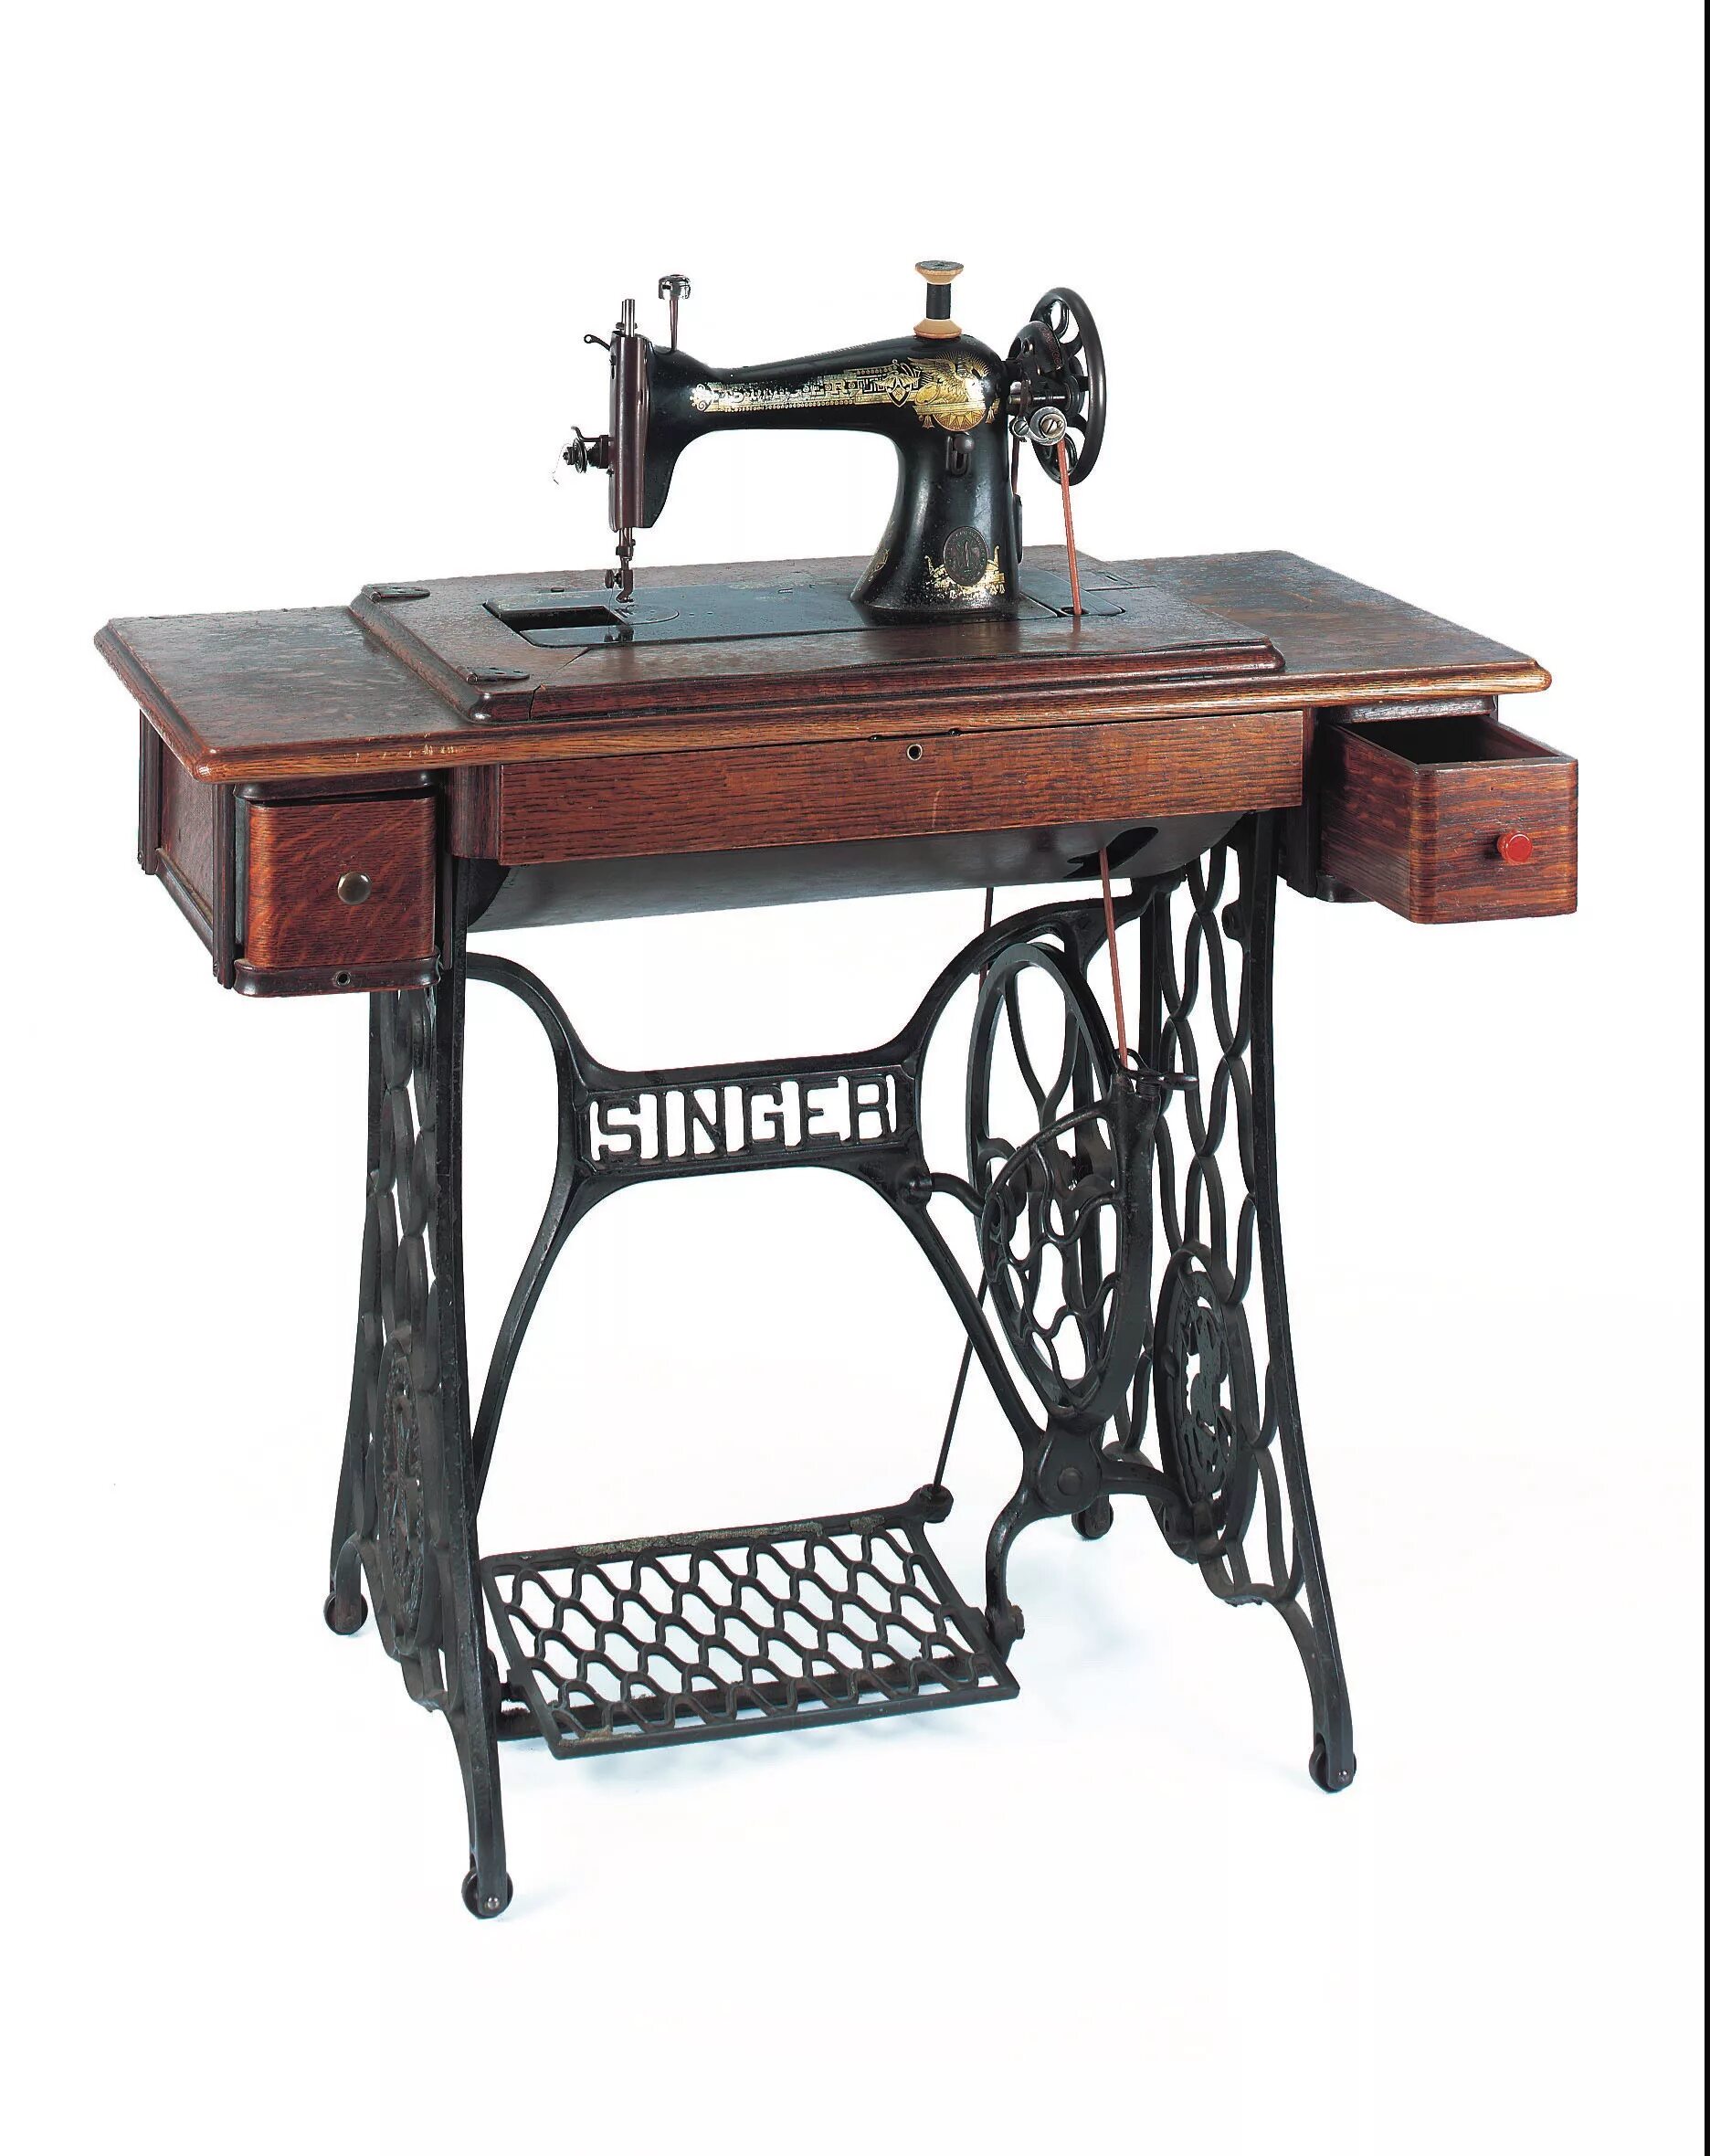 Швейная машинка Зингер ретро. Швейная машинка Зингер 18 века. Швейная машинка Зингер 2250. Швейная машинка зингер отзывы